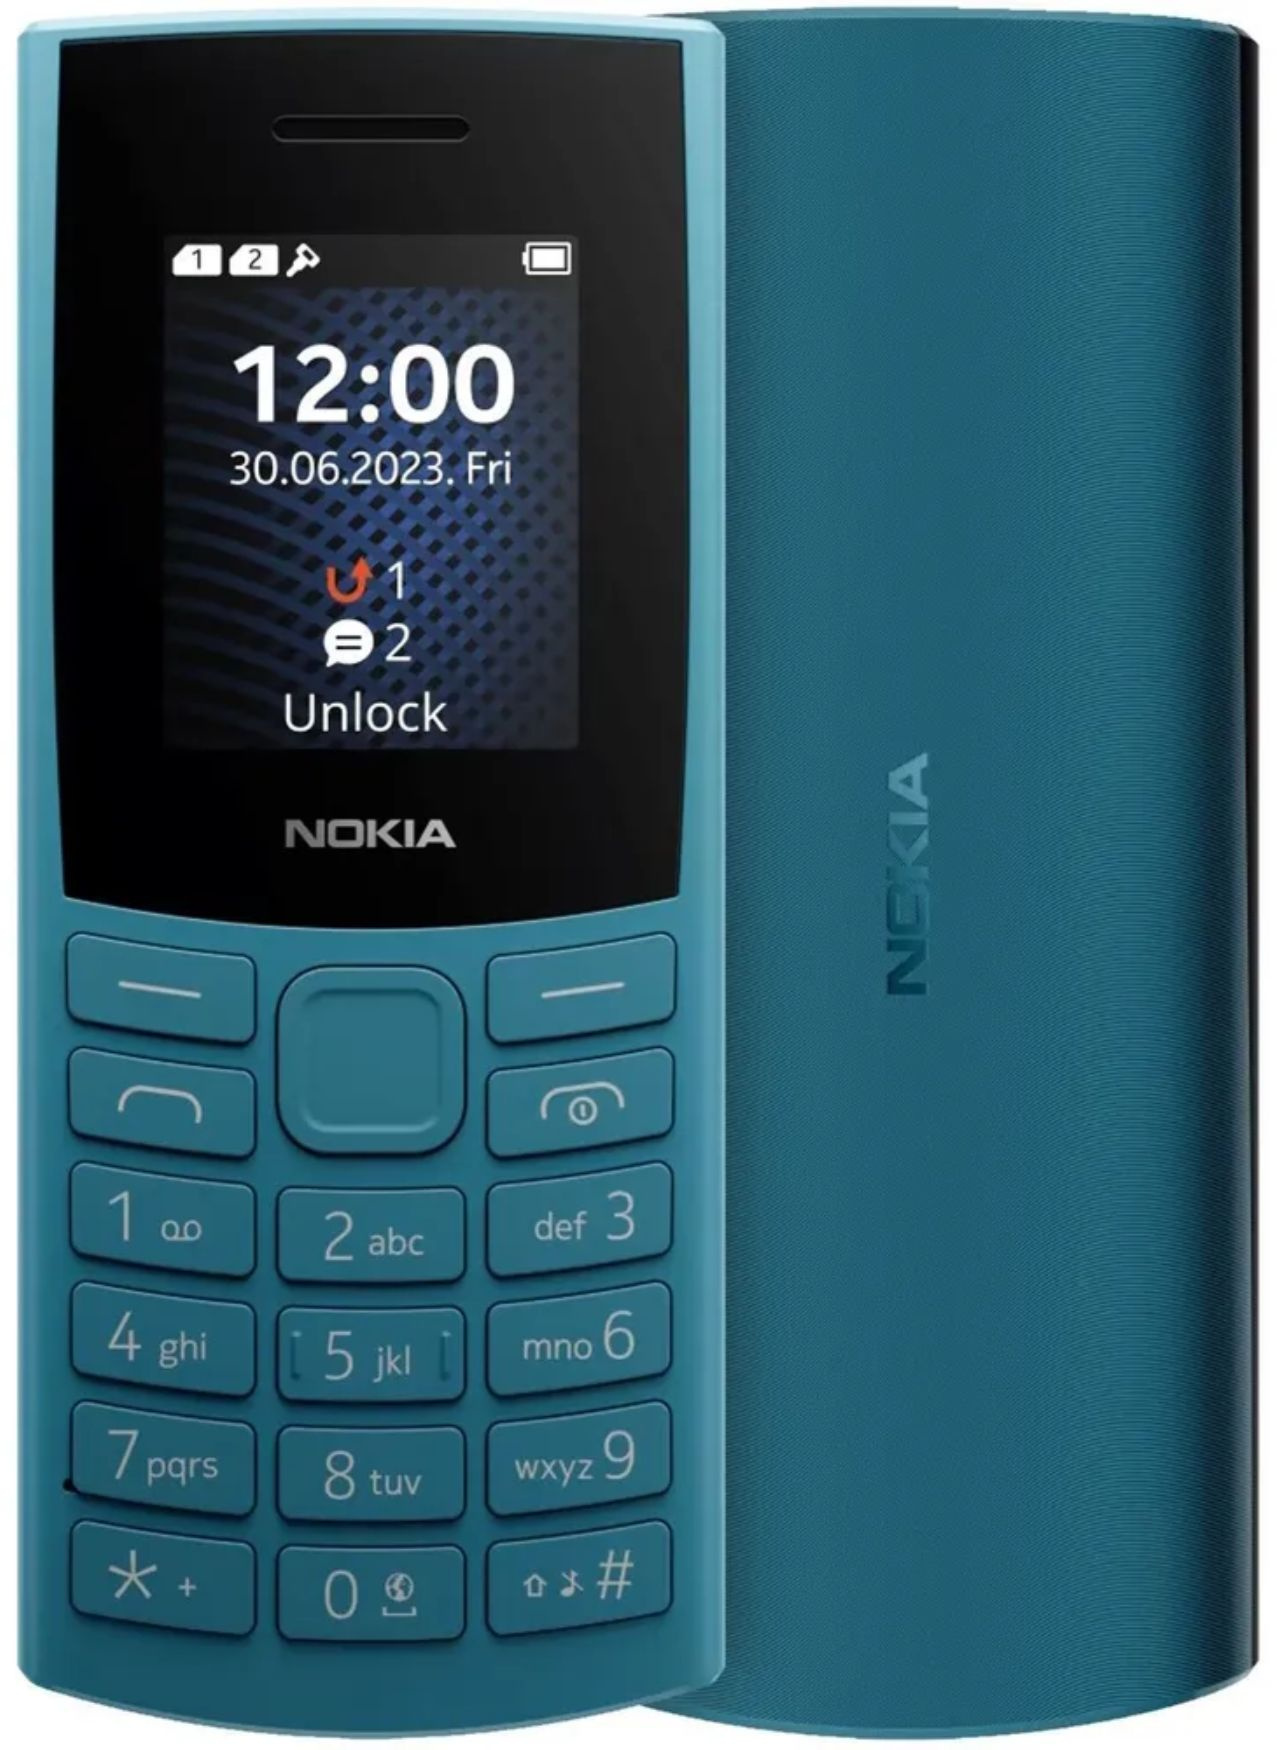 Мобильный телефон Nokia 105 (TA-1557 )DS EAC 0.048 голубой моноблок 3G 1.8" 120x160 Series 30+ GSM900/ 1800 GSM1900 (1GF019CPG6C02)